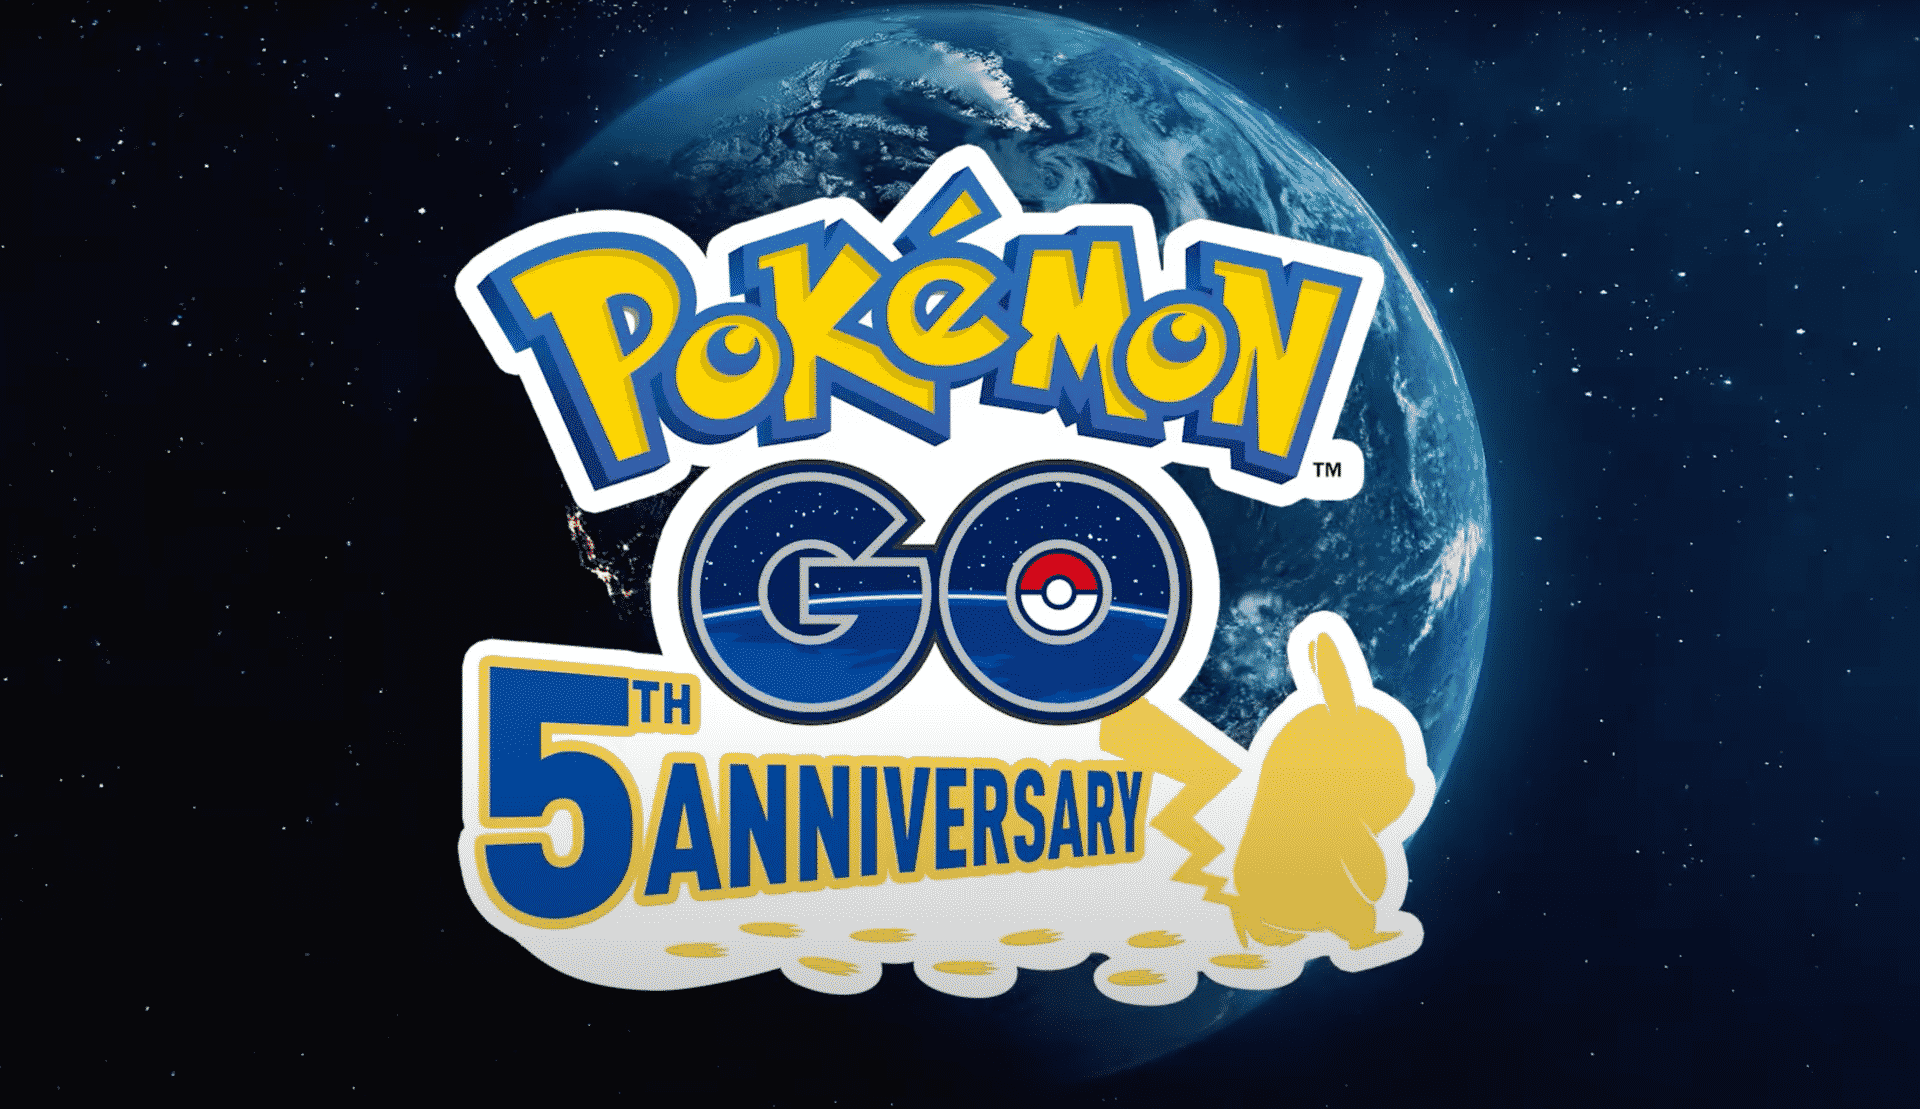 gioco-Pokémon-go- 5th anniversary